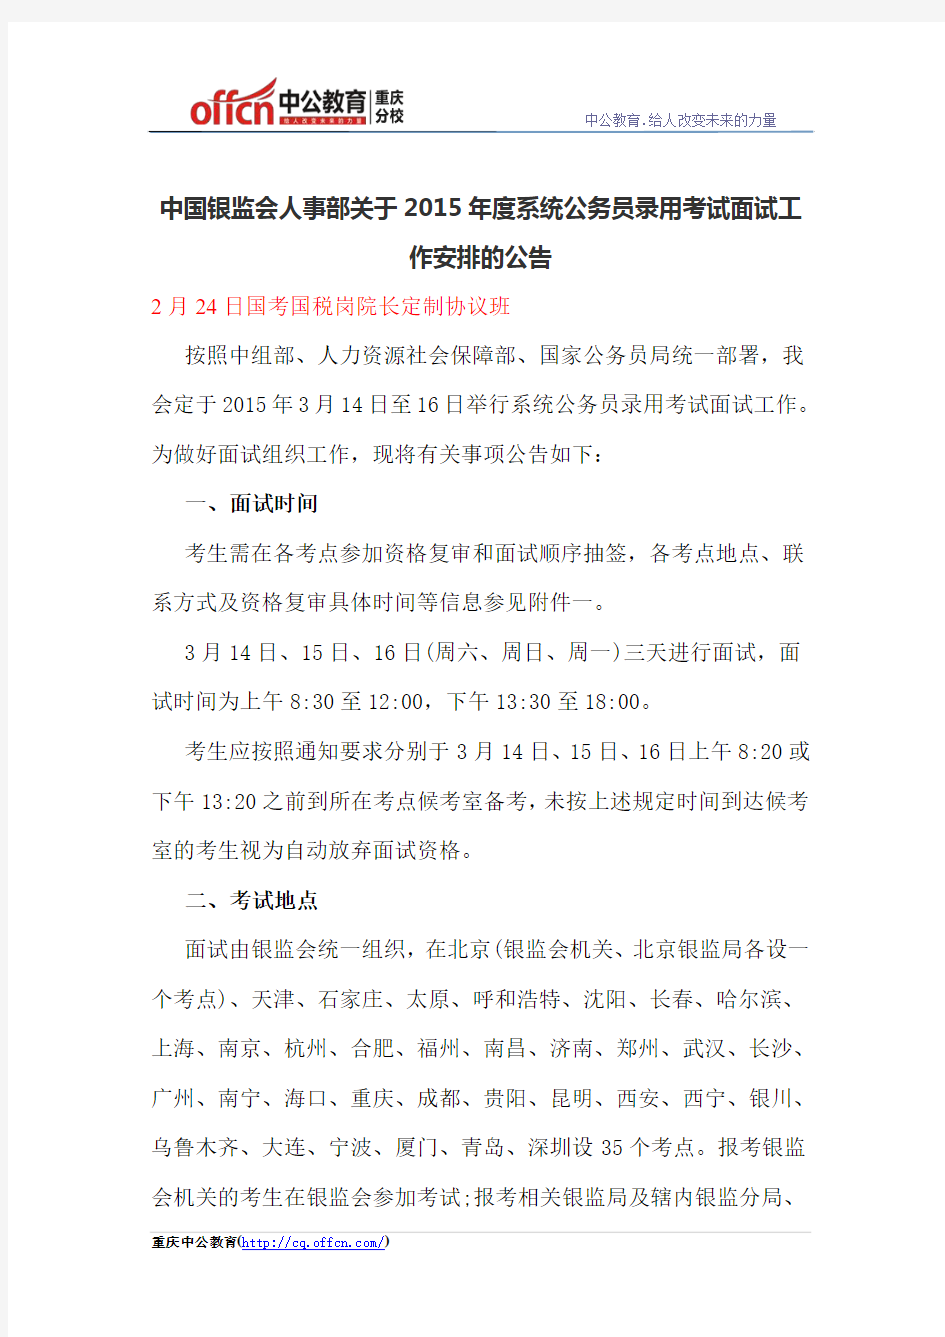 中国银监会人事部关于2015年度系统公务员录用考试面试工作安排的公告